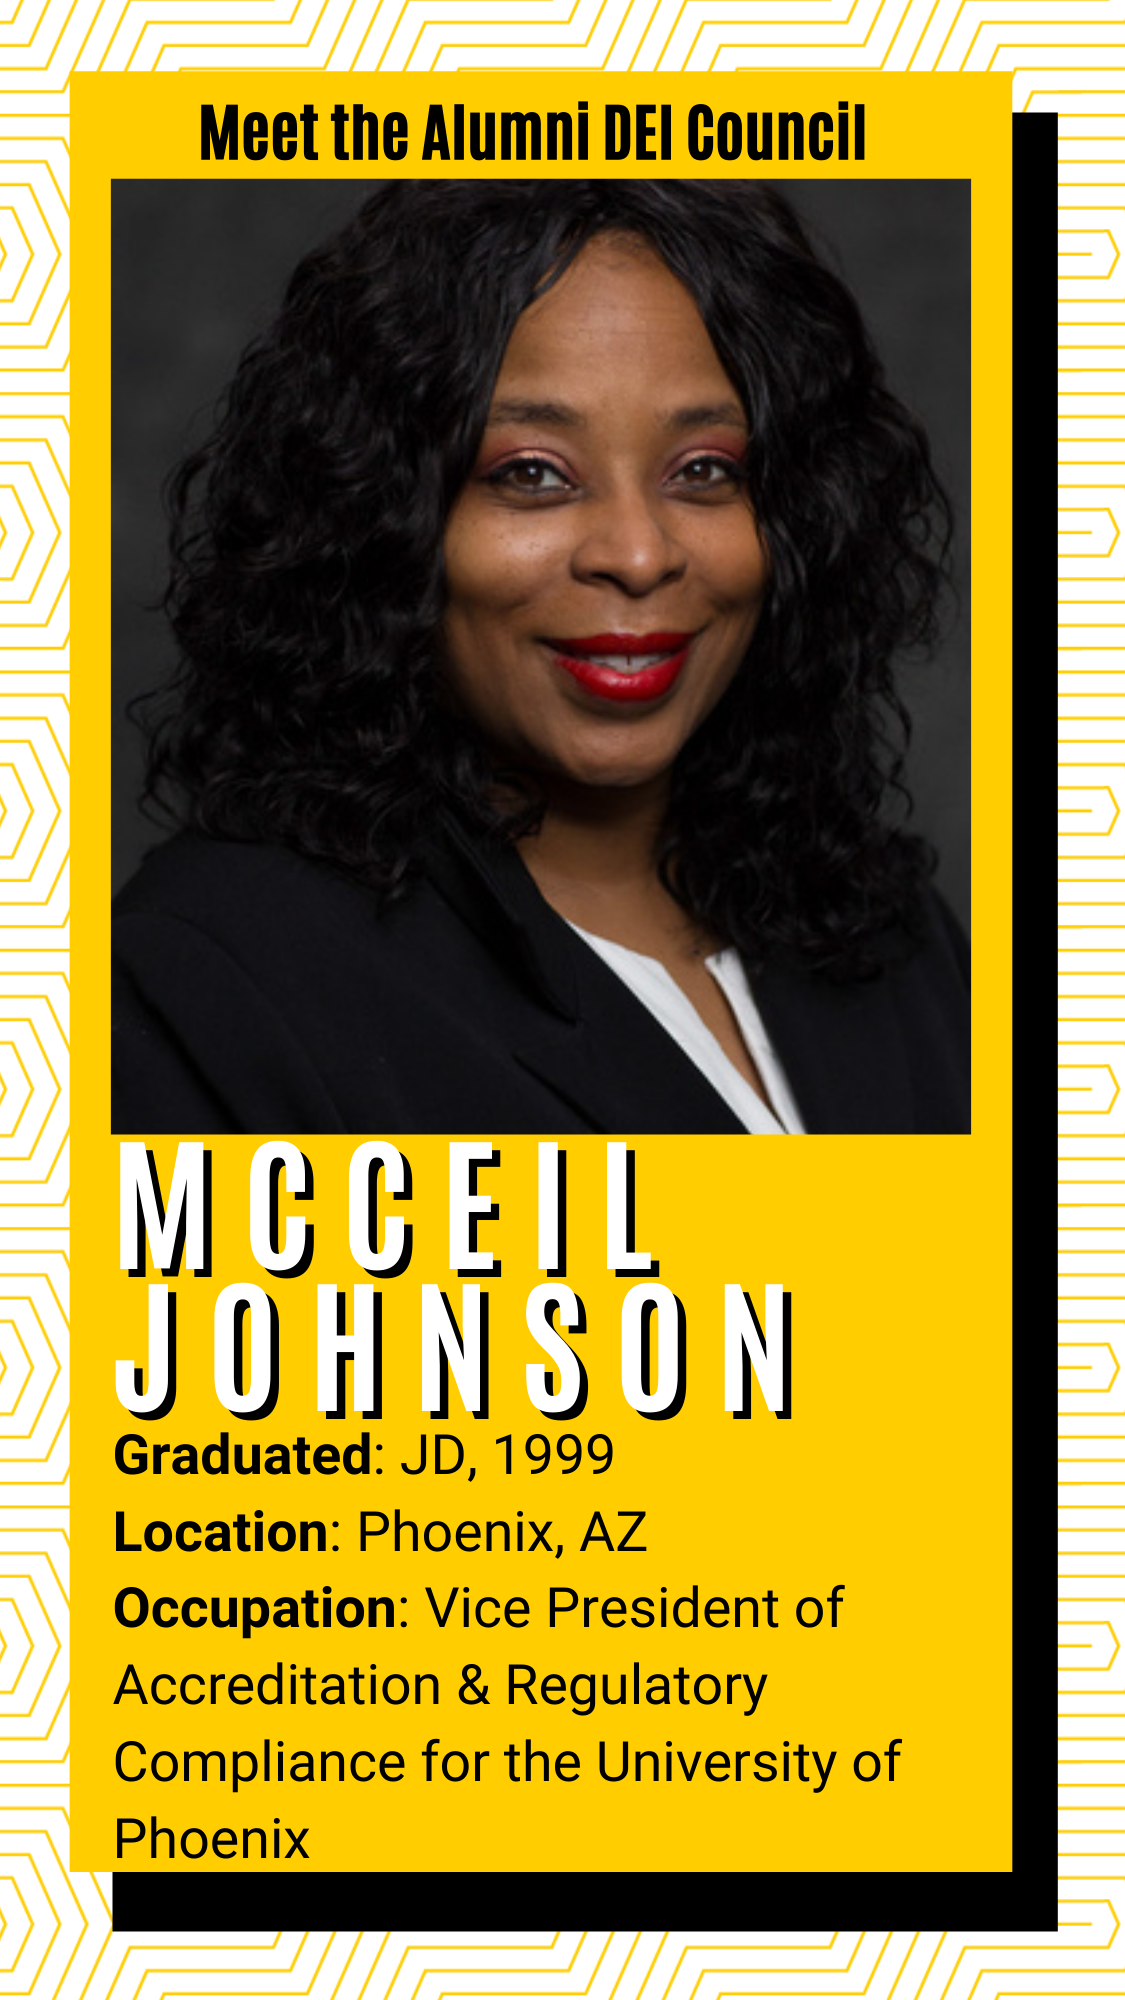 Meet the alumni DEI Council - McCeil Johnson